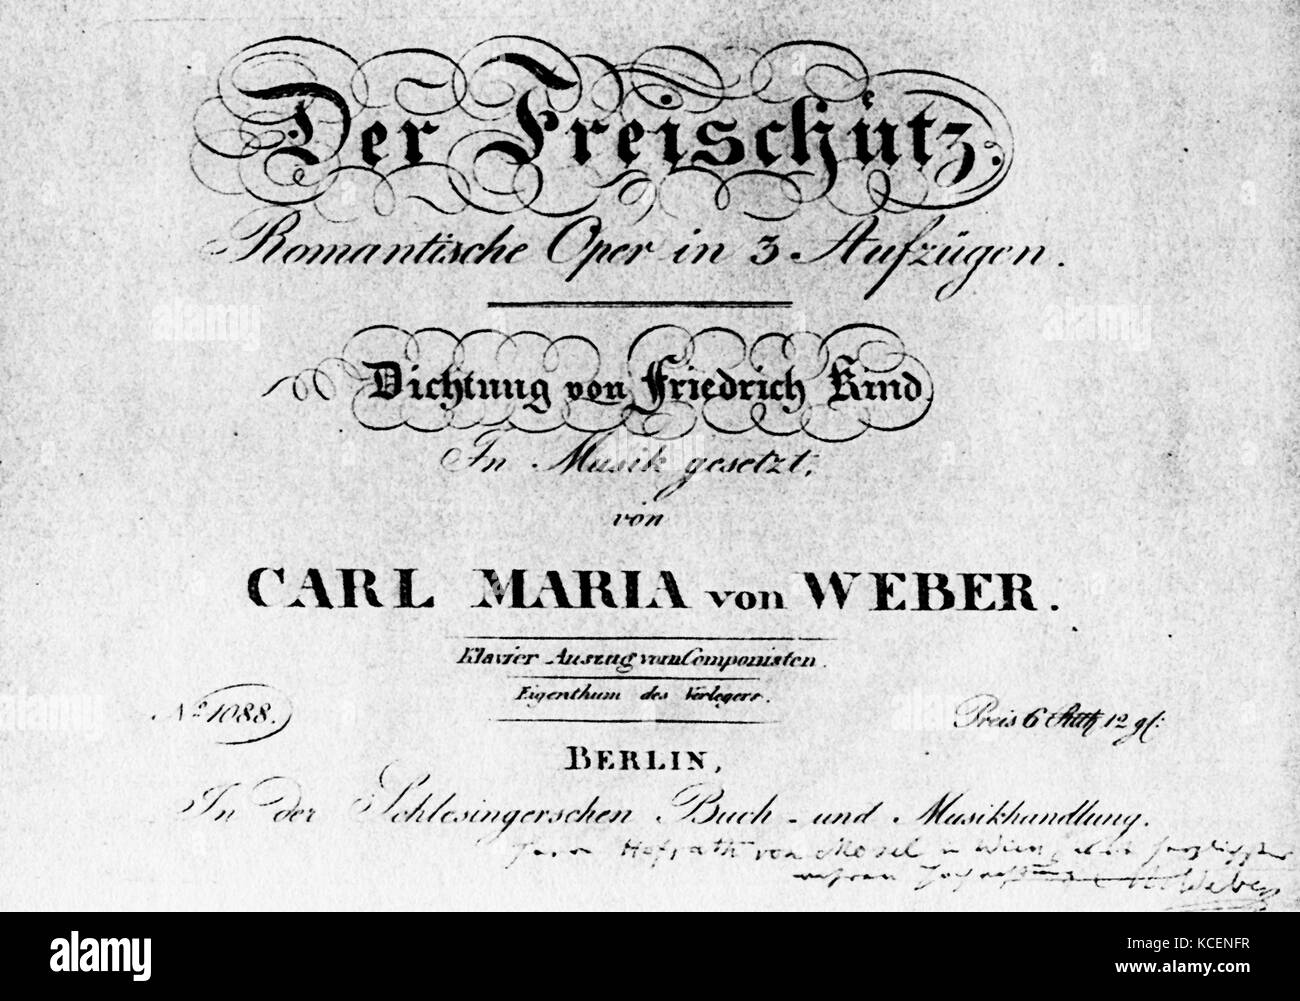 Pagina del titolo dell'Opera Tedesca 'Der Freischütz" (il tiratore libero) da Carl Maria von Weber (1786-1826) un compositore tedesco, conduttore, pianista, chitarrista, e critico. Datata del XIX secolo Foto Stock